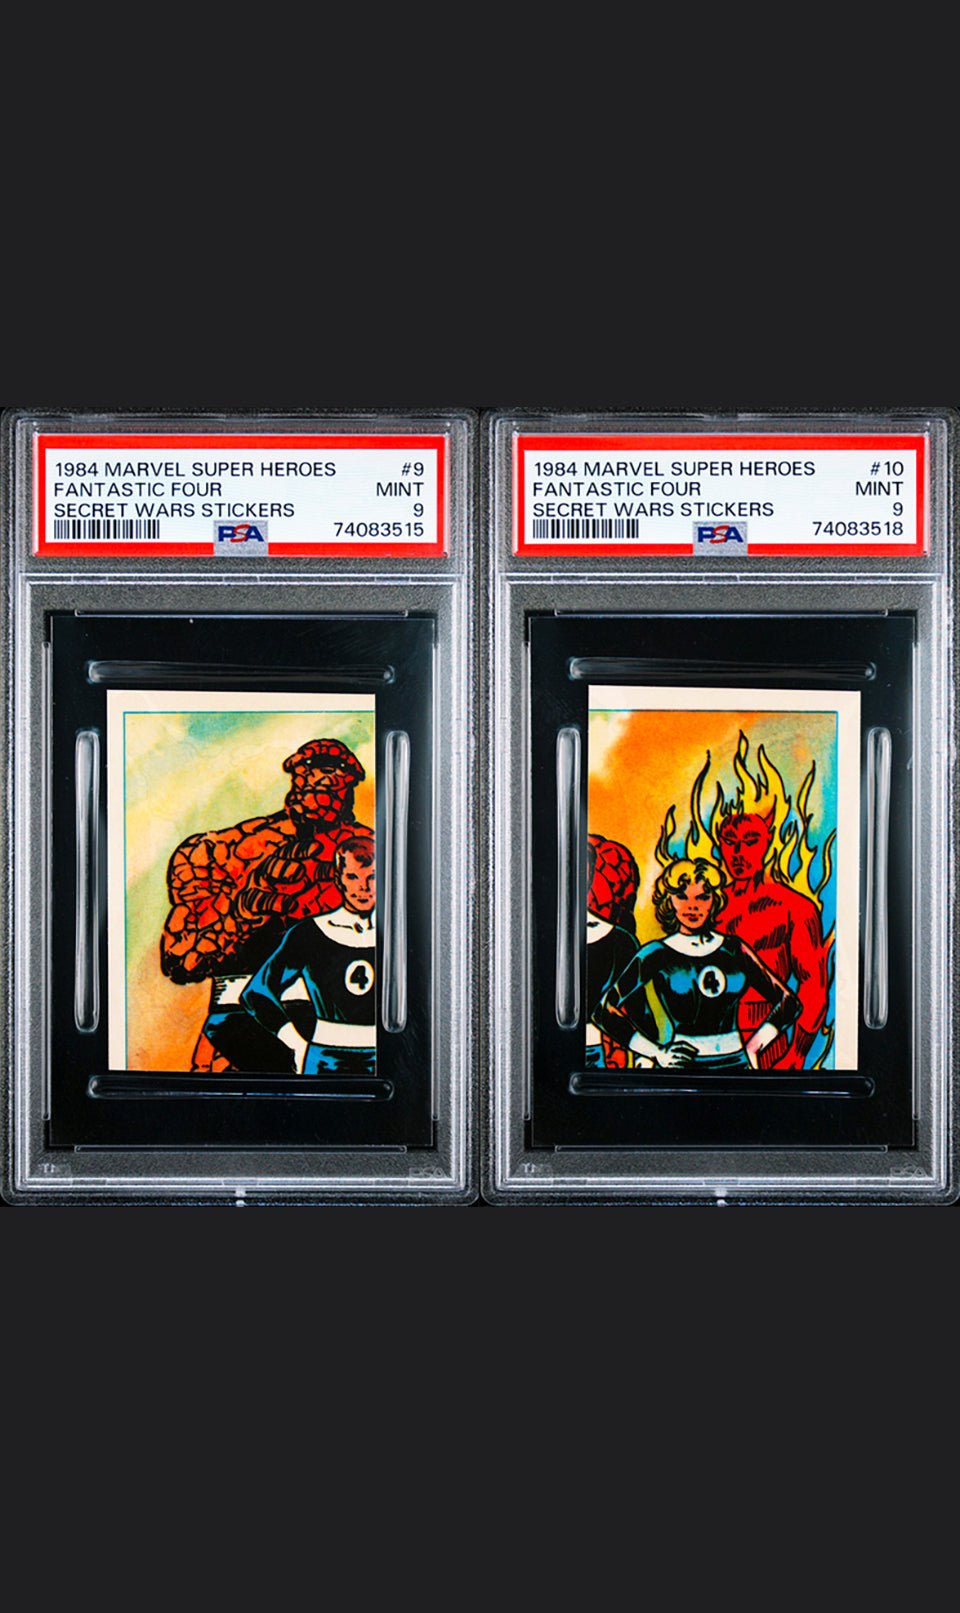 FANTASTIC FOUR PSA 9 1984 Marvel Super Heroes Secret Wars Stickers #9 #10 Marvel Graded Cards Sticker - Hobby Gems